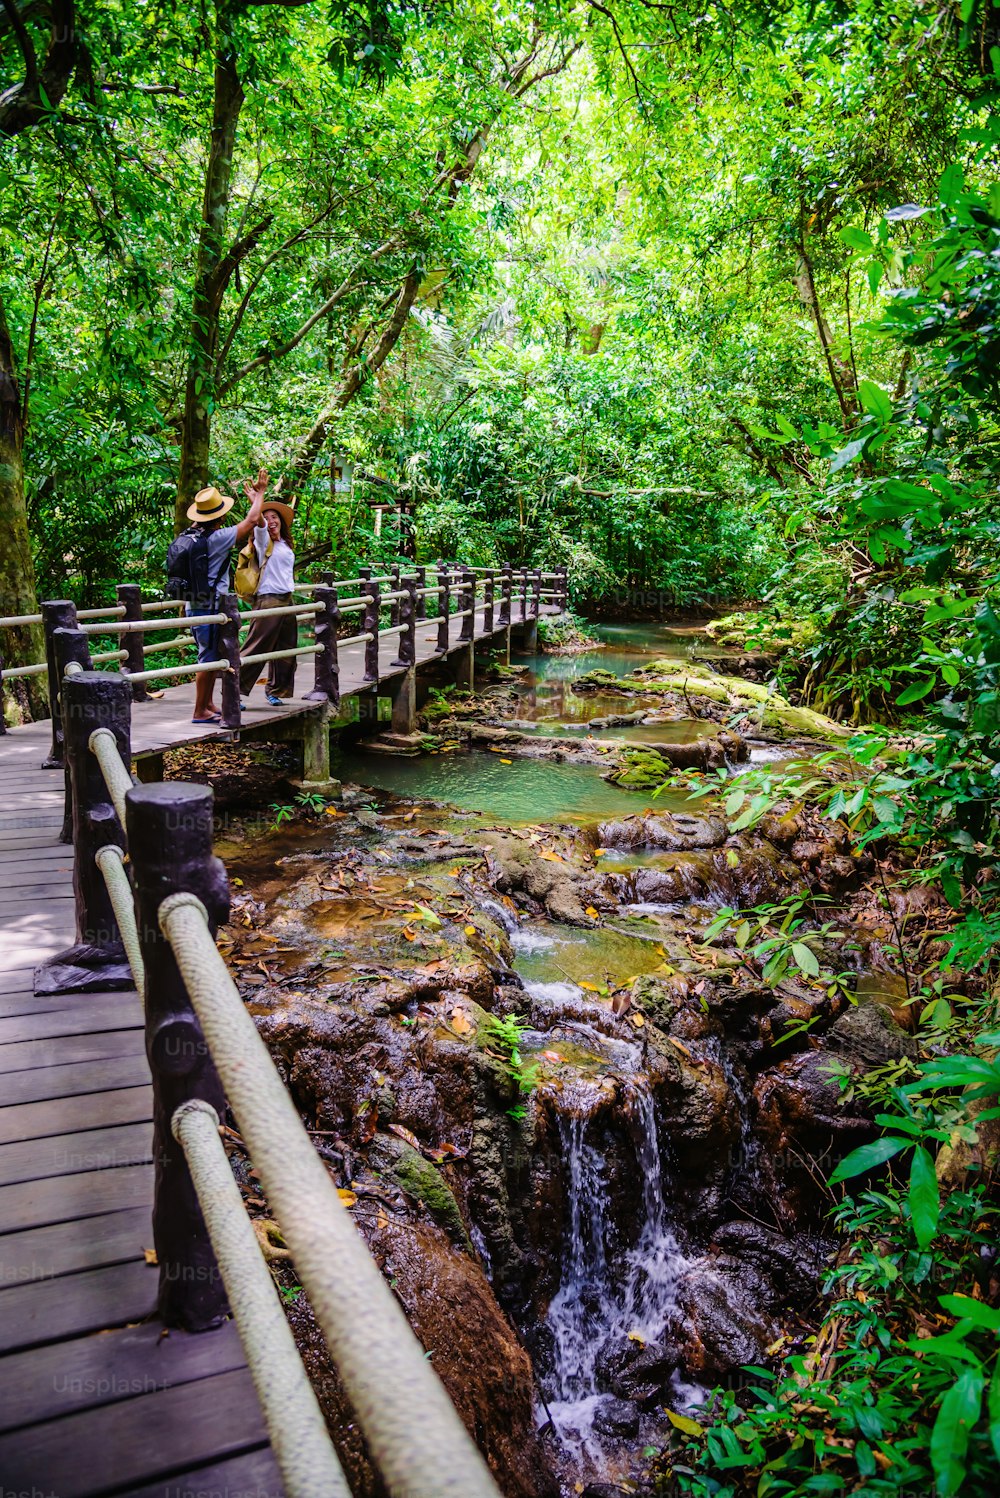 Couple asiatique heureux de voyager dans la forêt de mangroves. Voyagez en marchant sur un pont en bois. Sentier de la nature, cascade de Thanbok, loisirs, voyage, sacs à dos, nature, tourisme, campagne, style, forêt, aventure.